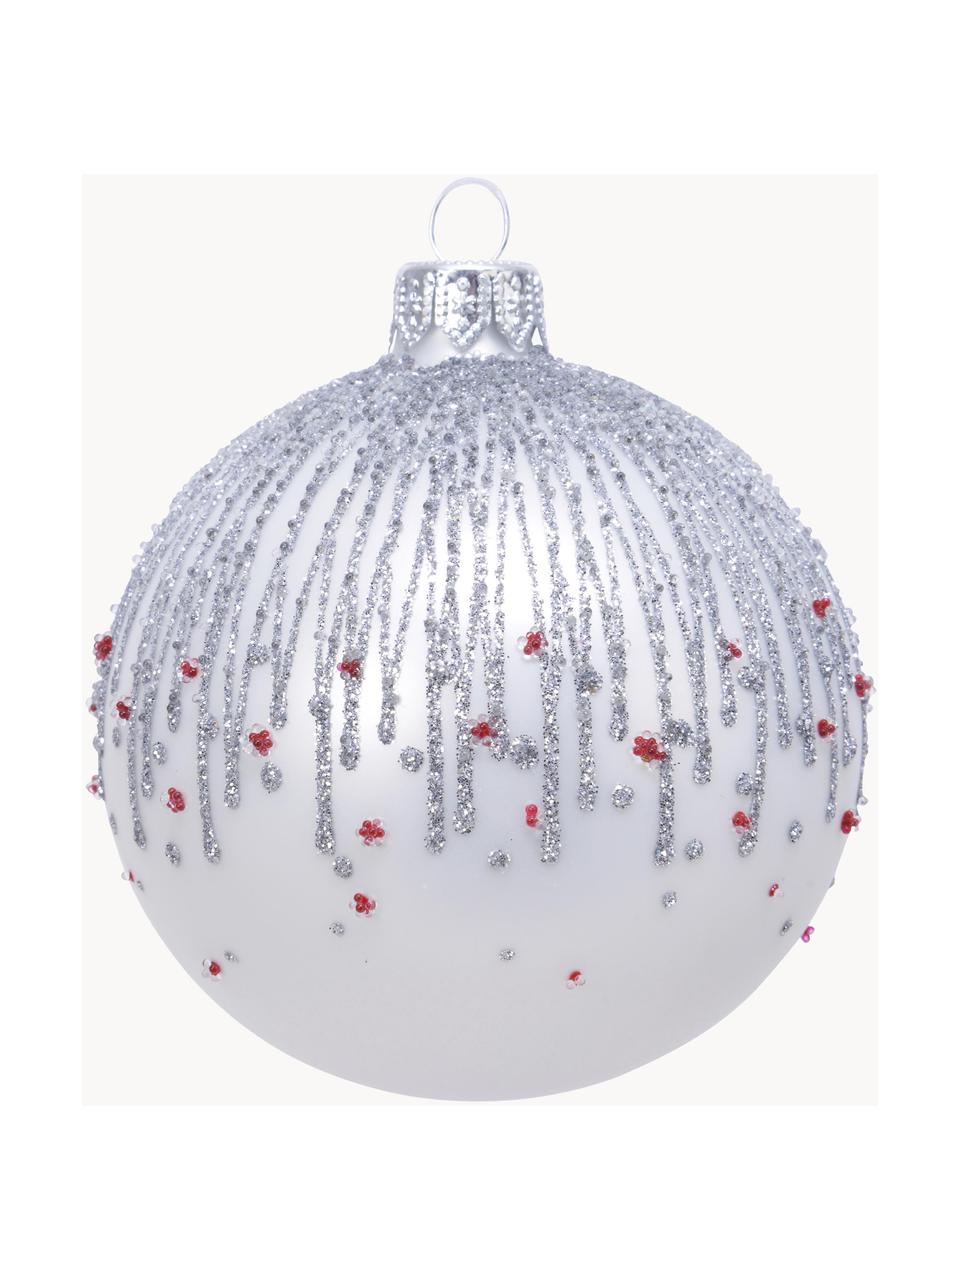 Vánoční ozdoby Aniela, 2 ks, Bílá, stříbrná, červená, Ø 8 cm